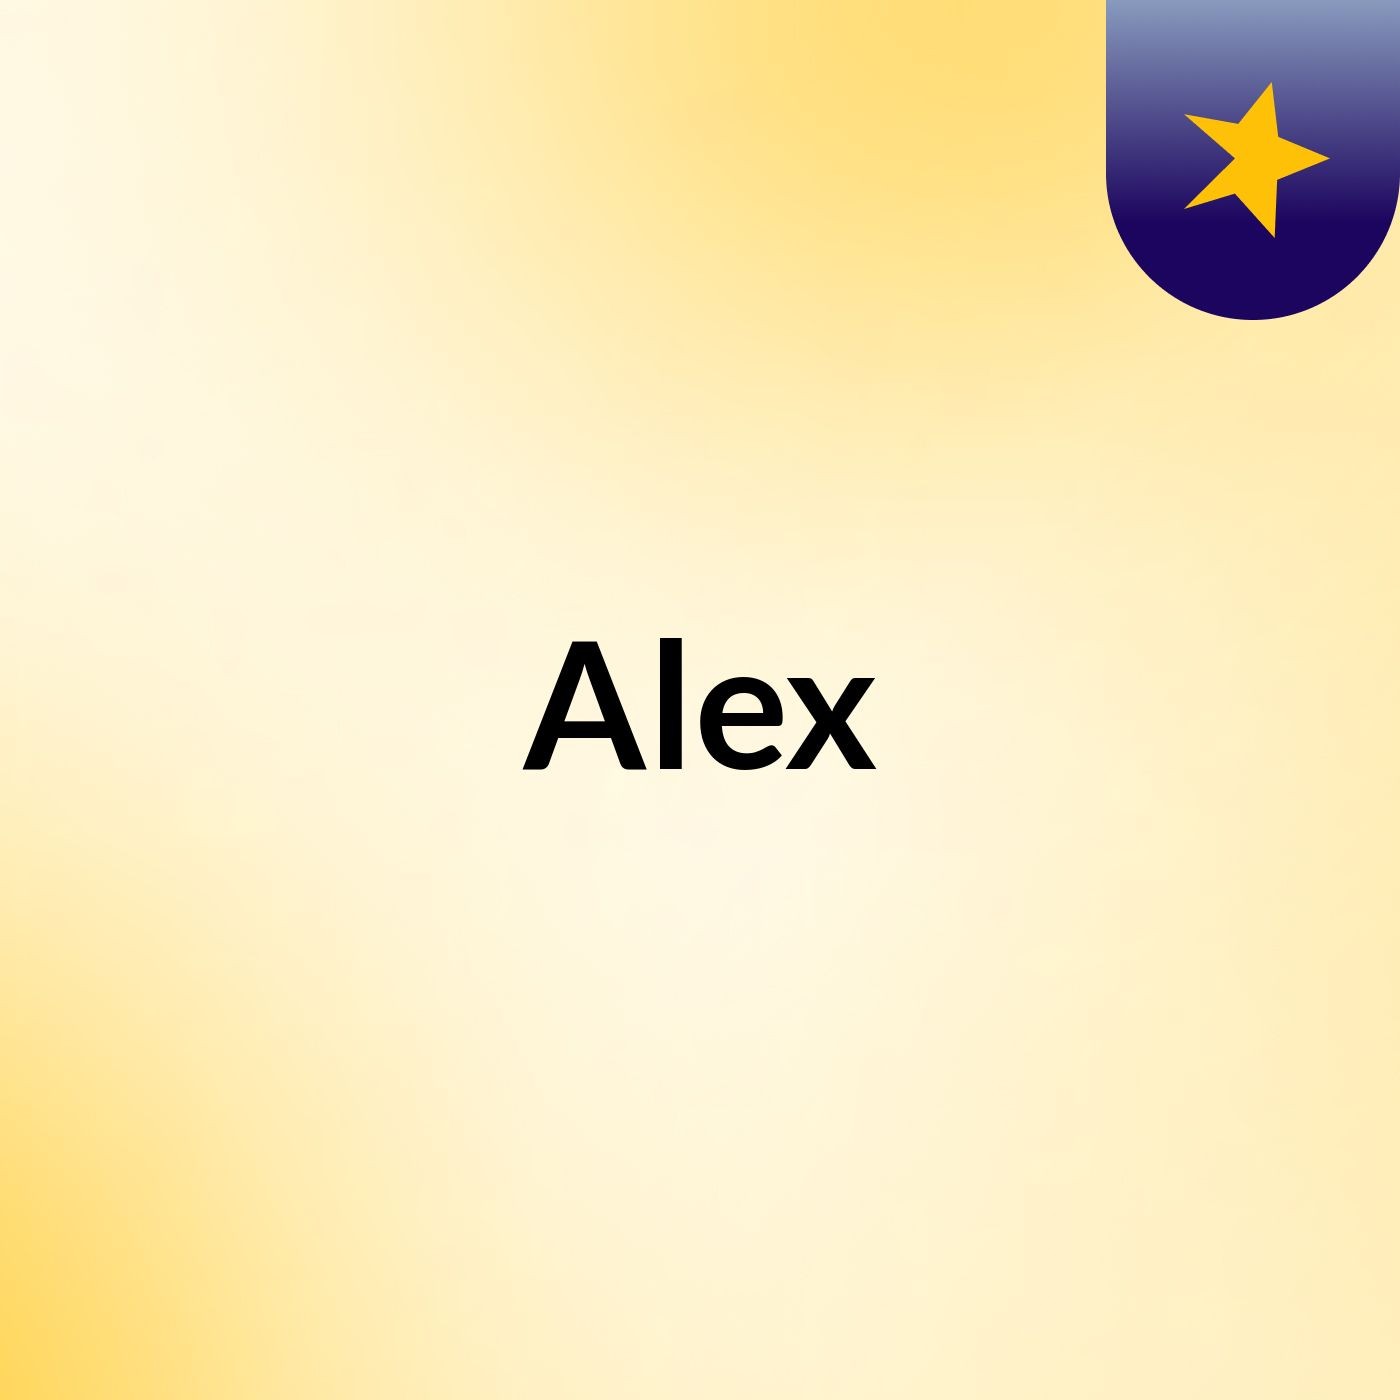 Episode 111 - Alex